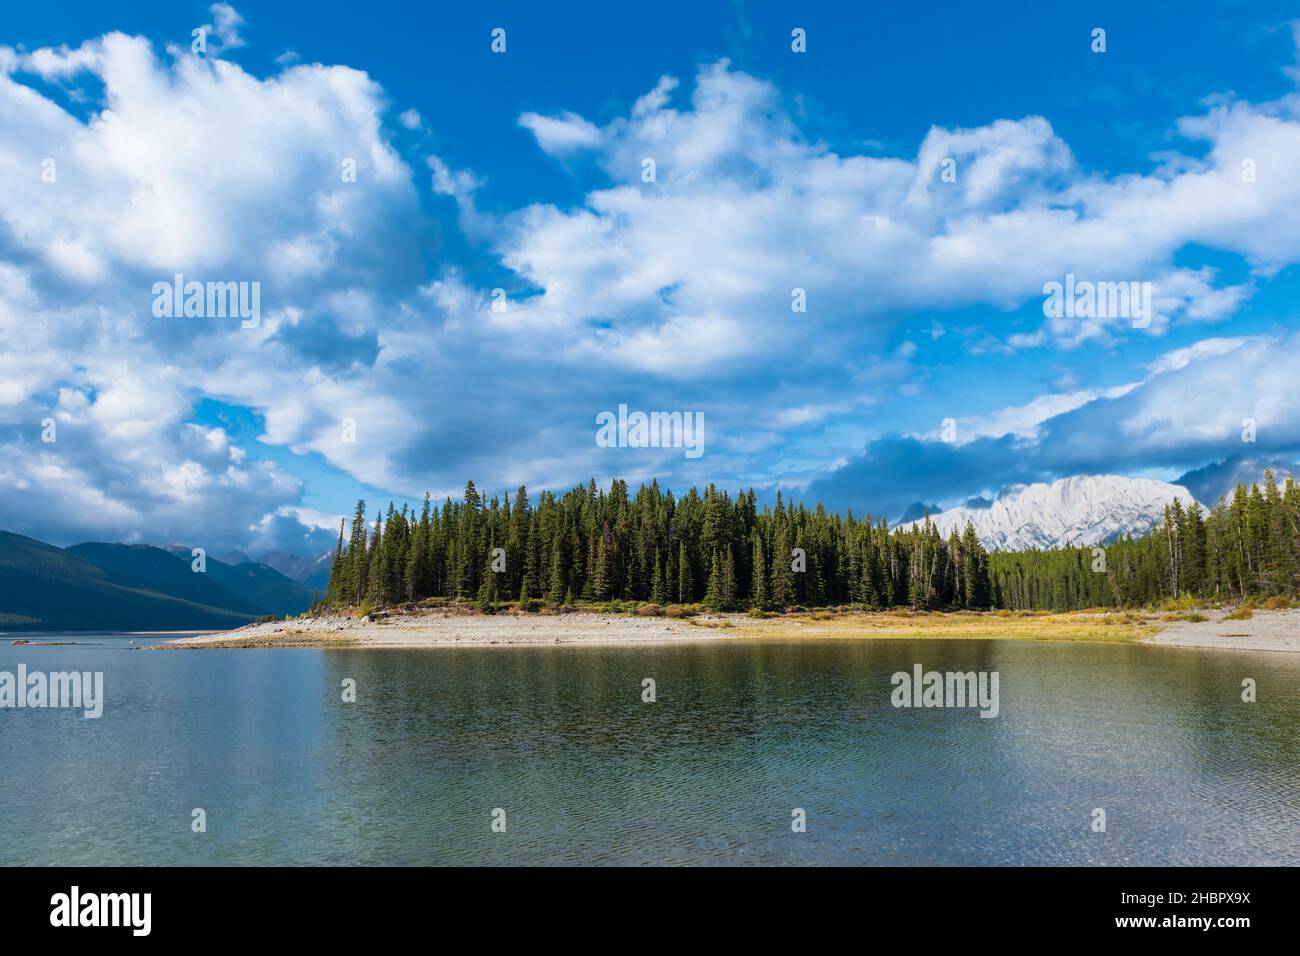 Scenic summertime views of lower Kananaskis Lake, Alberta Canada Stock Photo